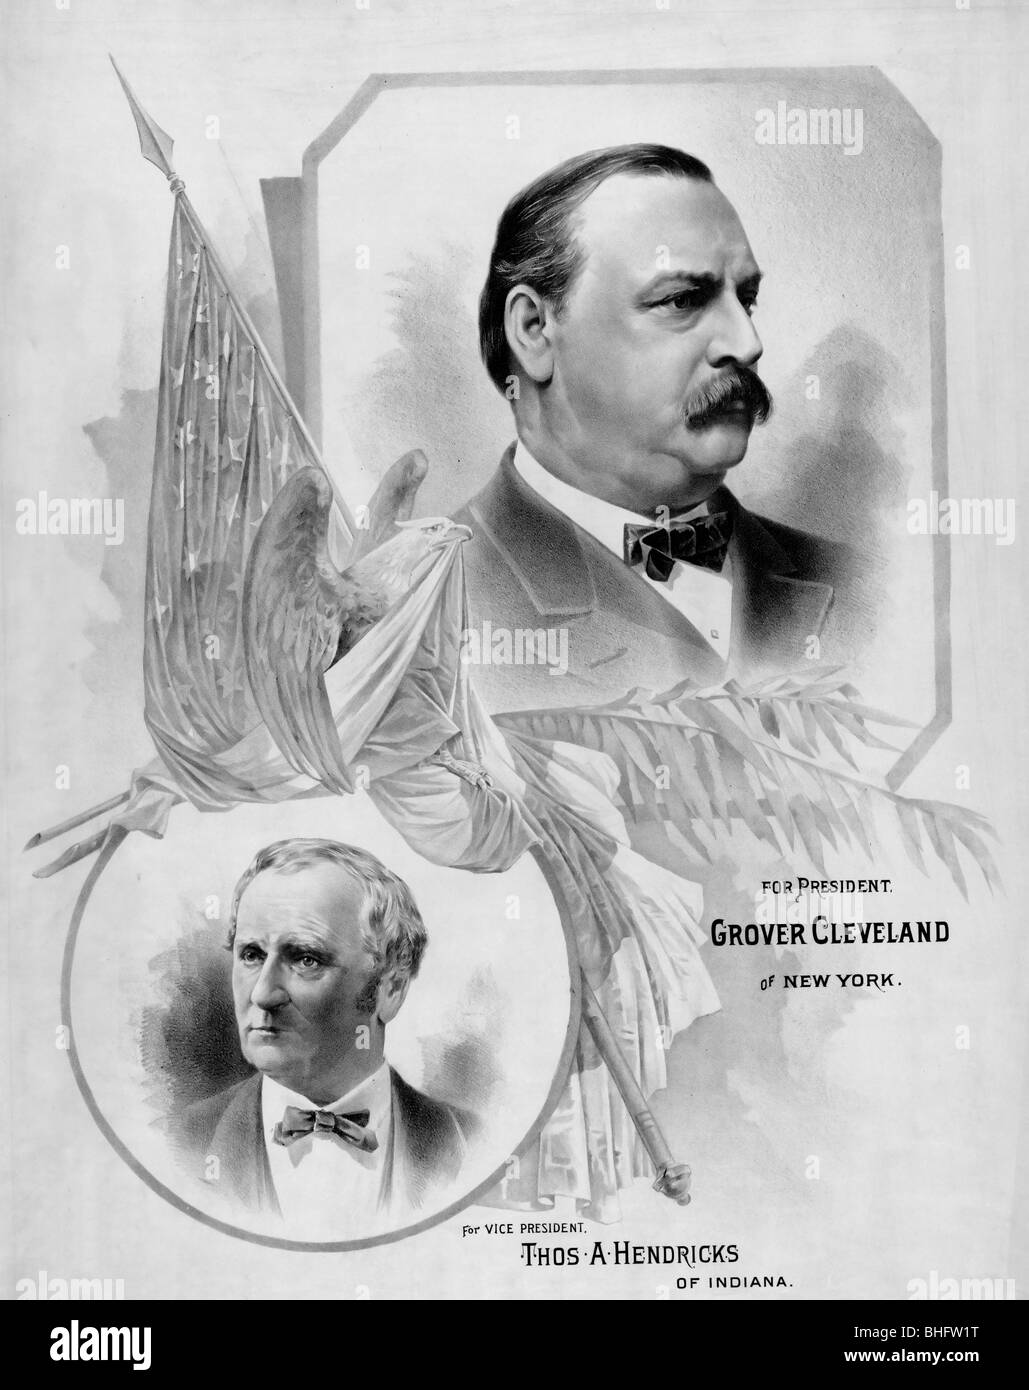 Pour le président, Grover Cleveland de New York, pour vice-président, Thomas Hendricks de l'Indiana, USA Election Présidentielle 1884 Banque D'Images